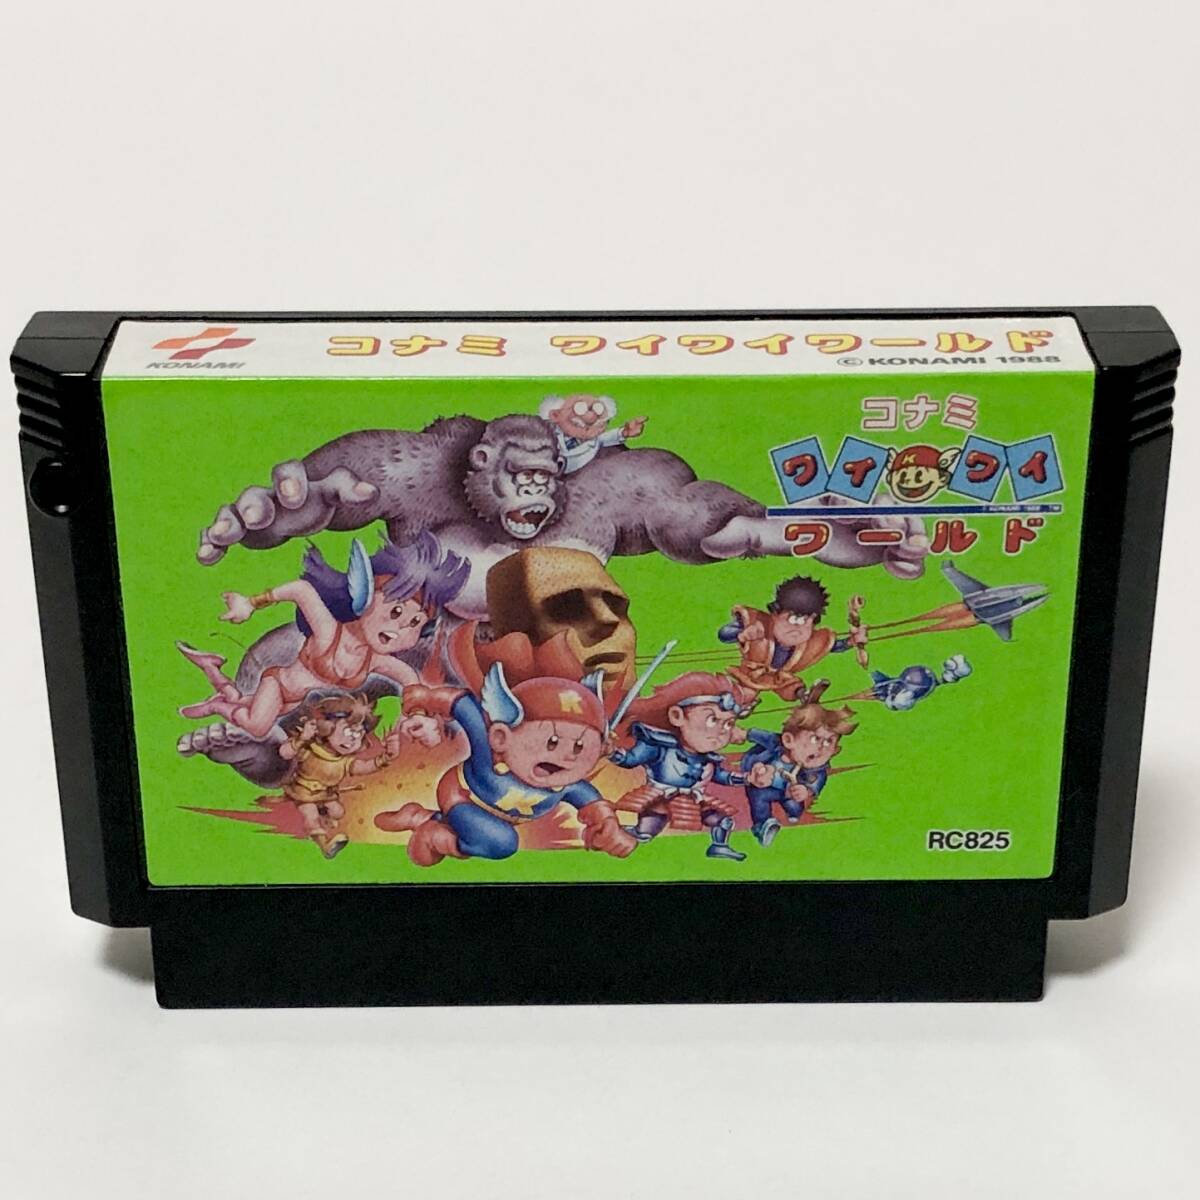 ファミコン コナミワイワイワールド 箱説付き チラシ キャラカード有 コナミ Nintendo Famicom Konami Wai Wai World CIB Tested Konami_画像7